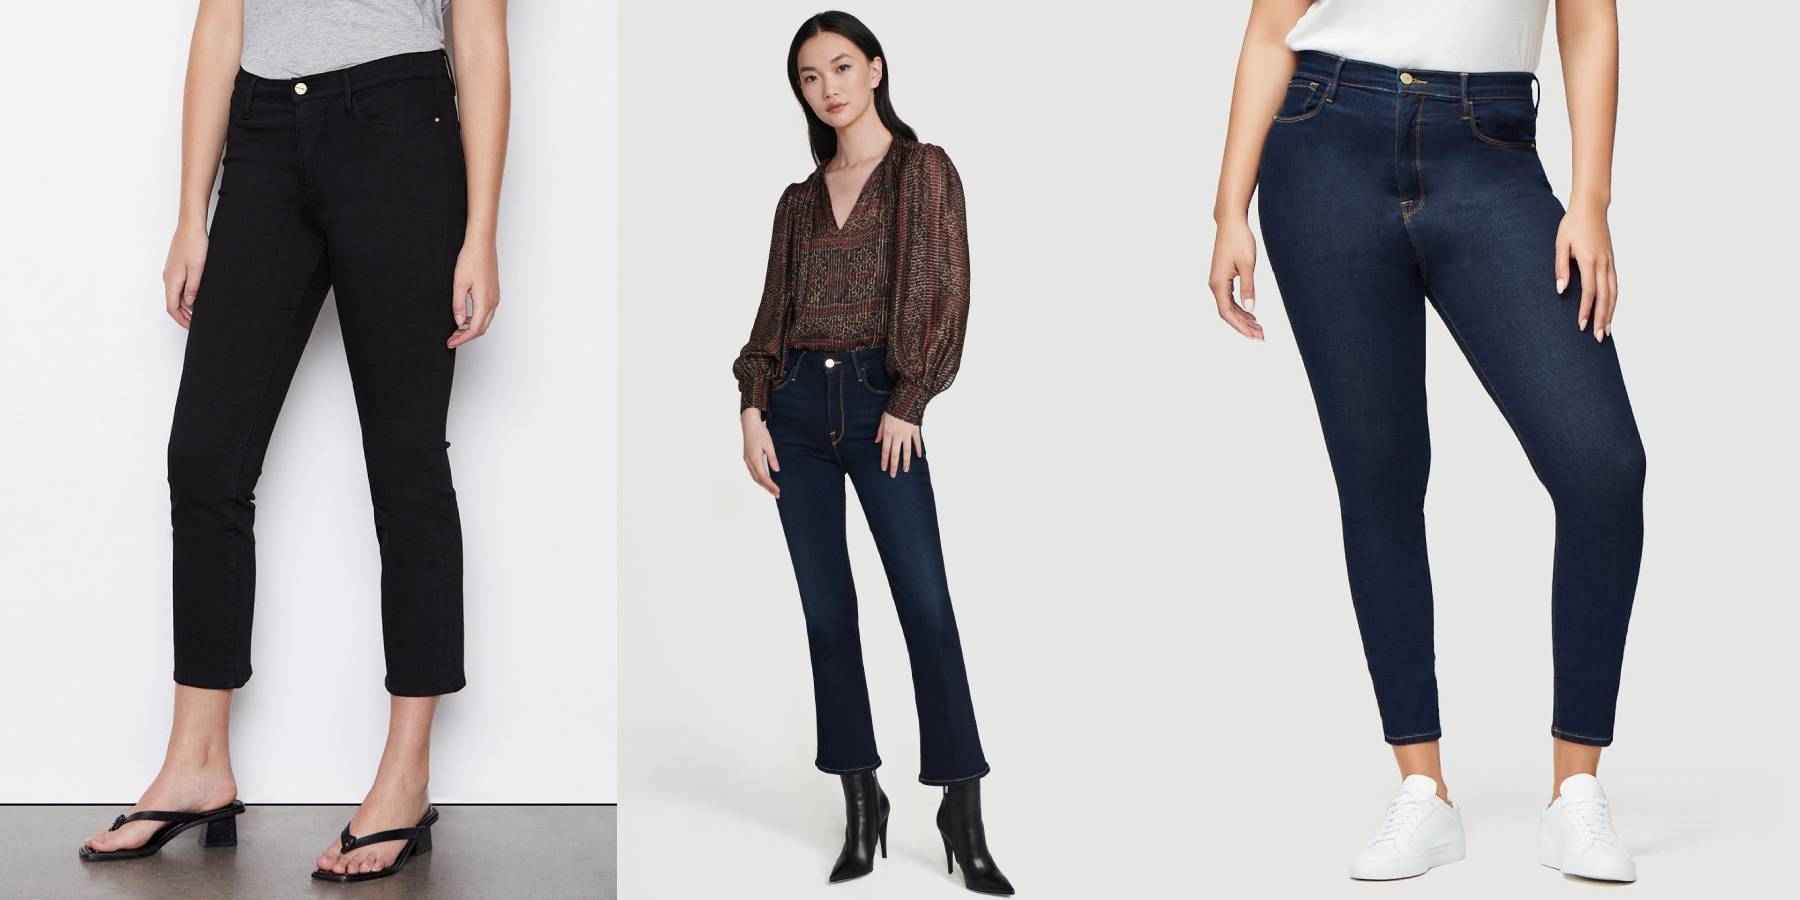 Women's FRAME Jeans & Denim